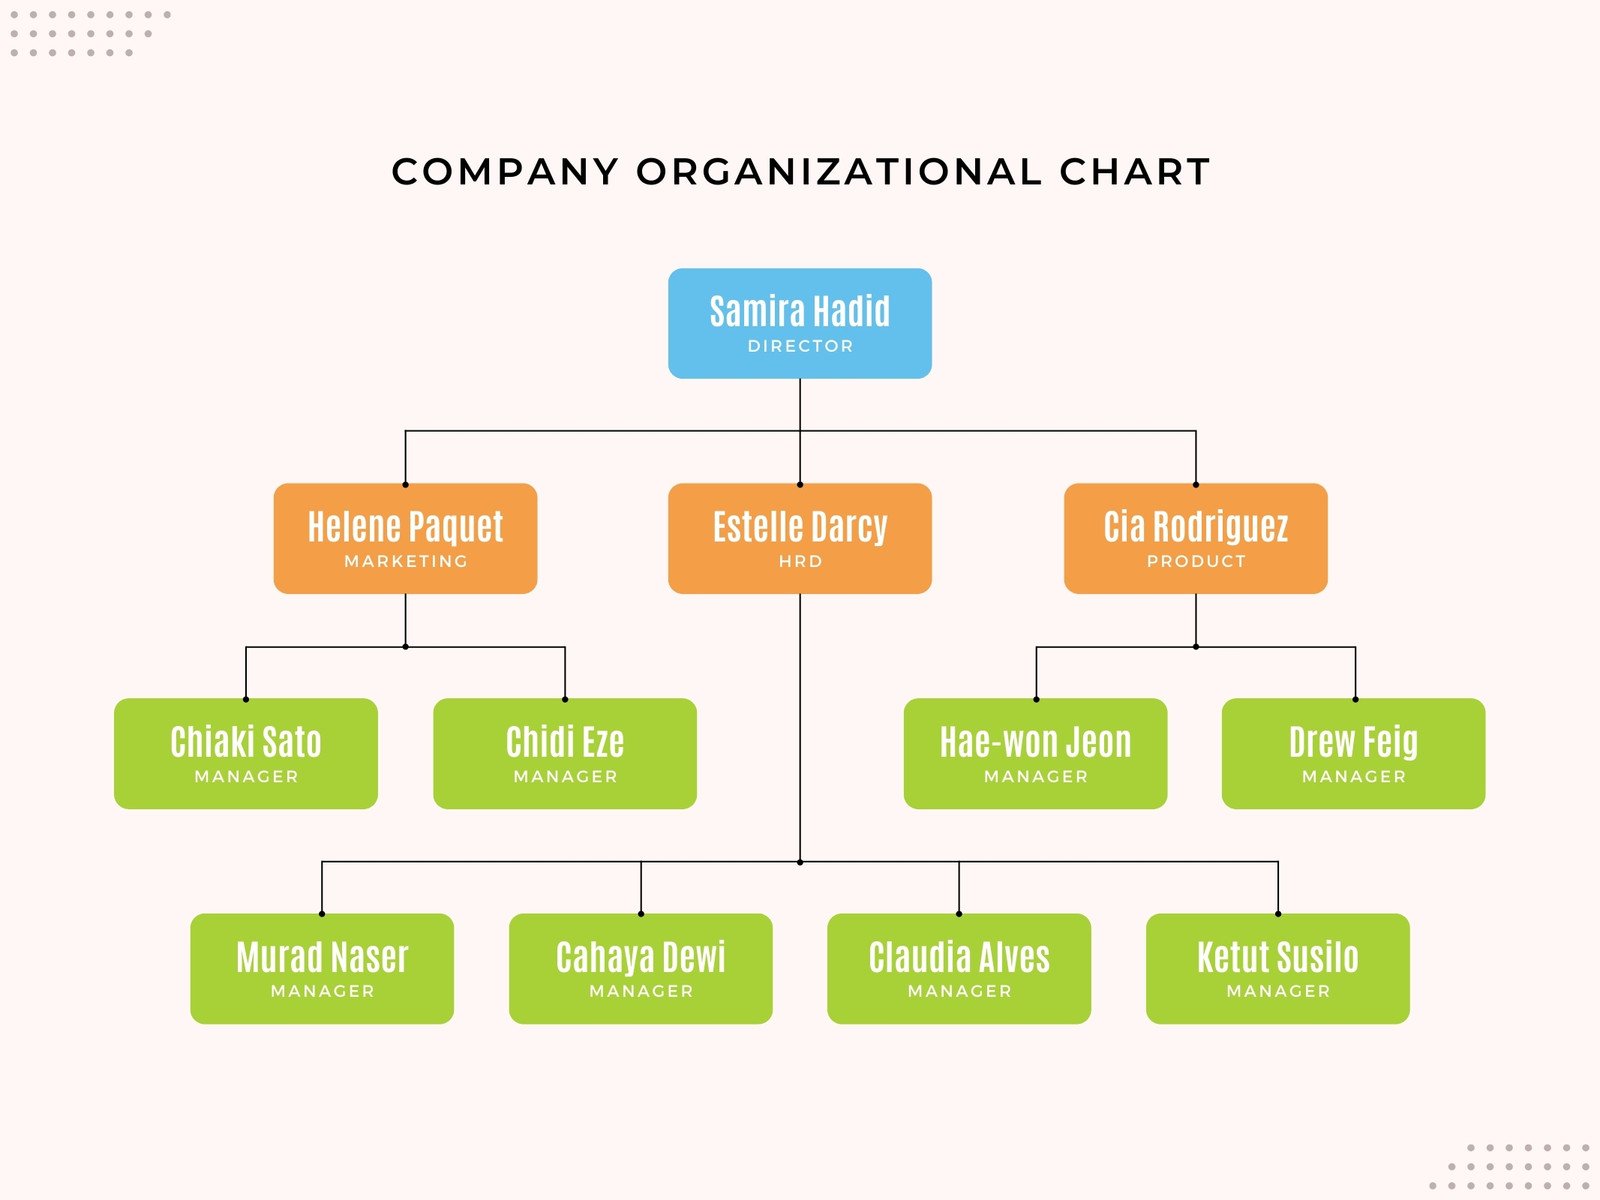 organizational chart free template